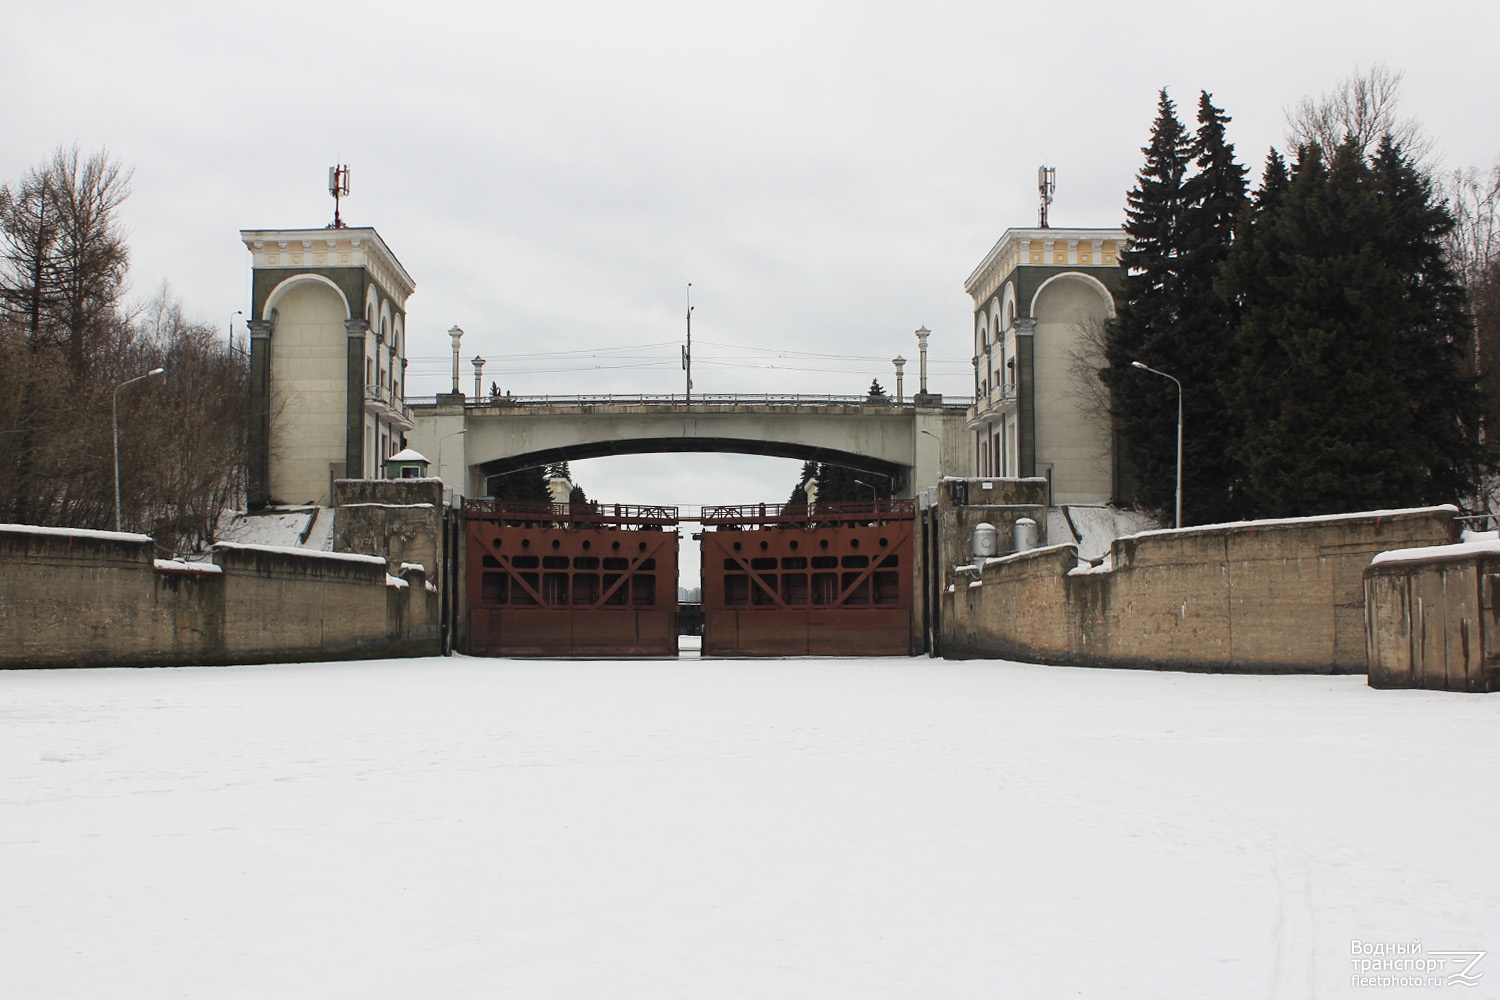 Карамышевский гидроузел (шлюз № 9 КиМ)